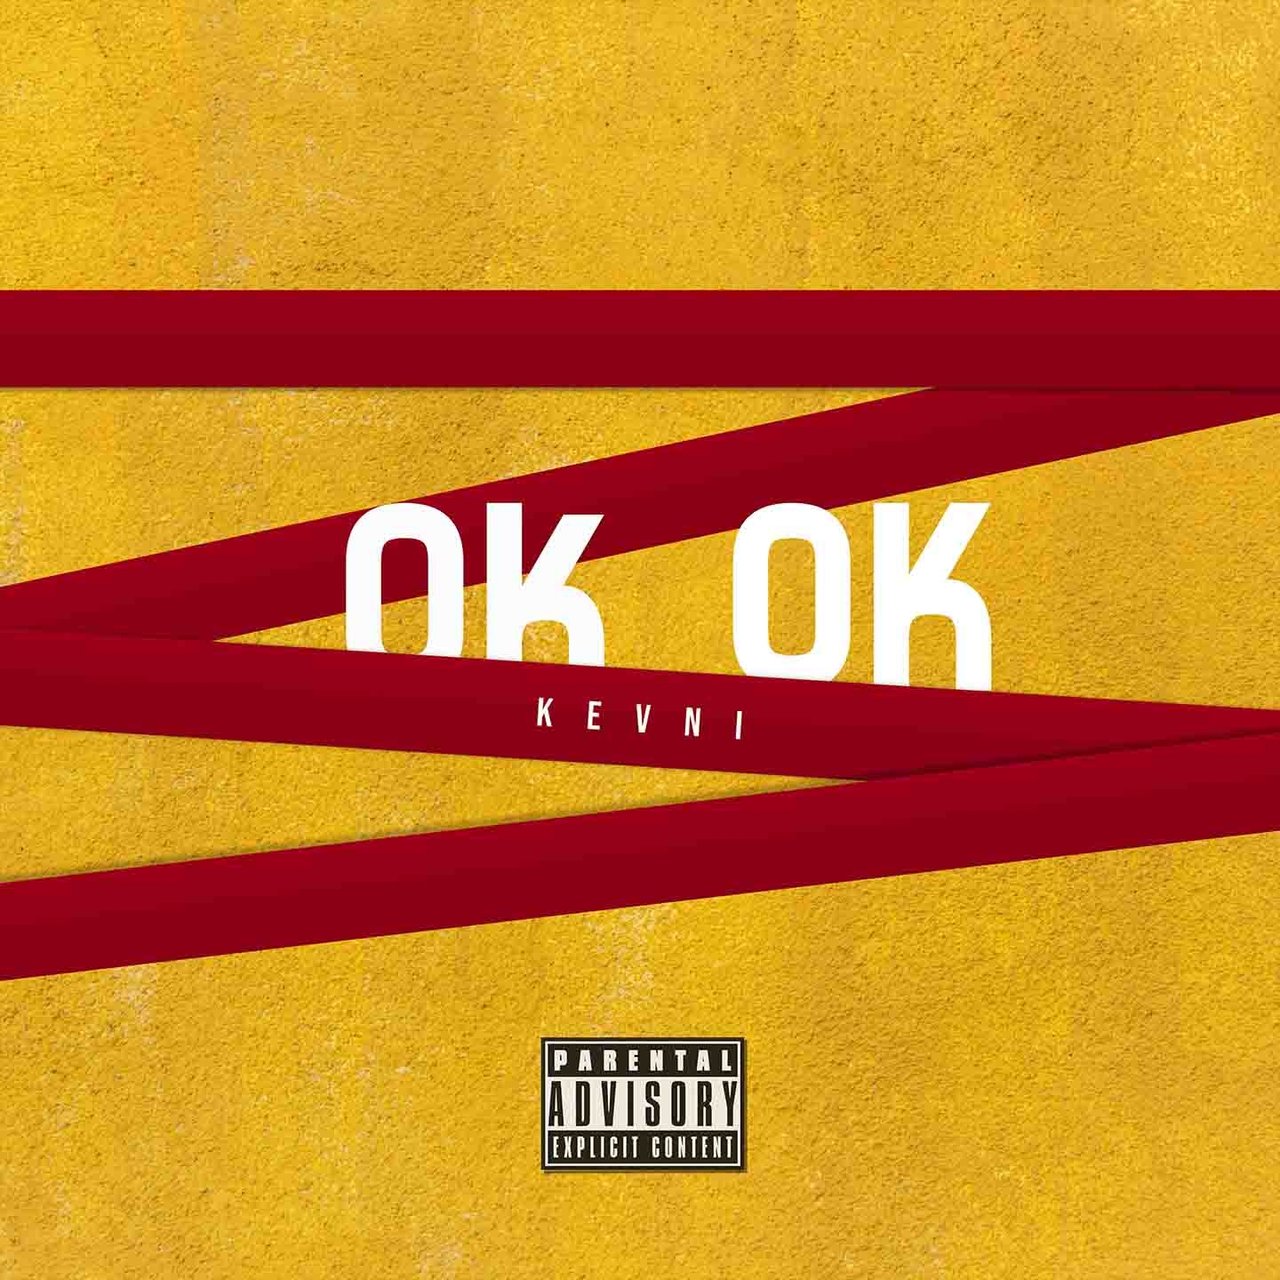 Kevni - OK OK (Cover)